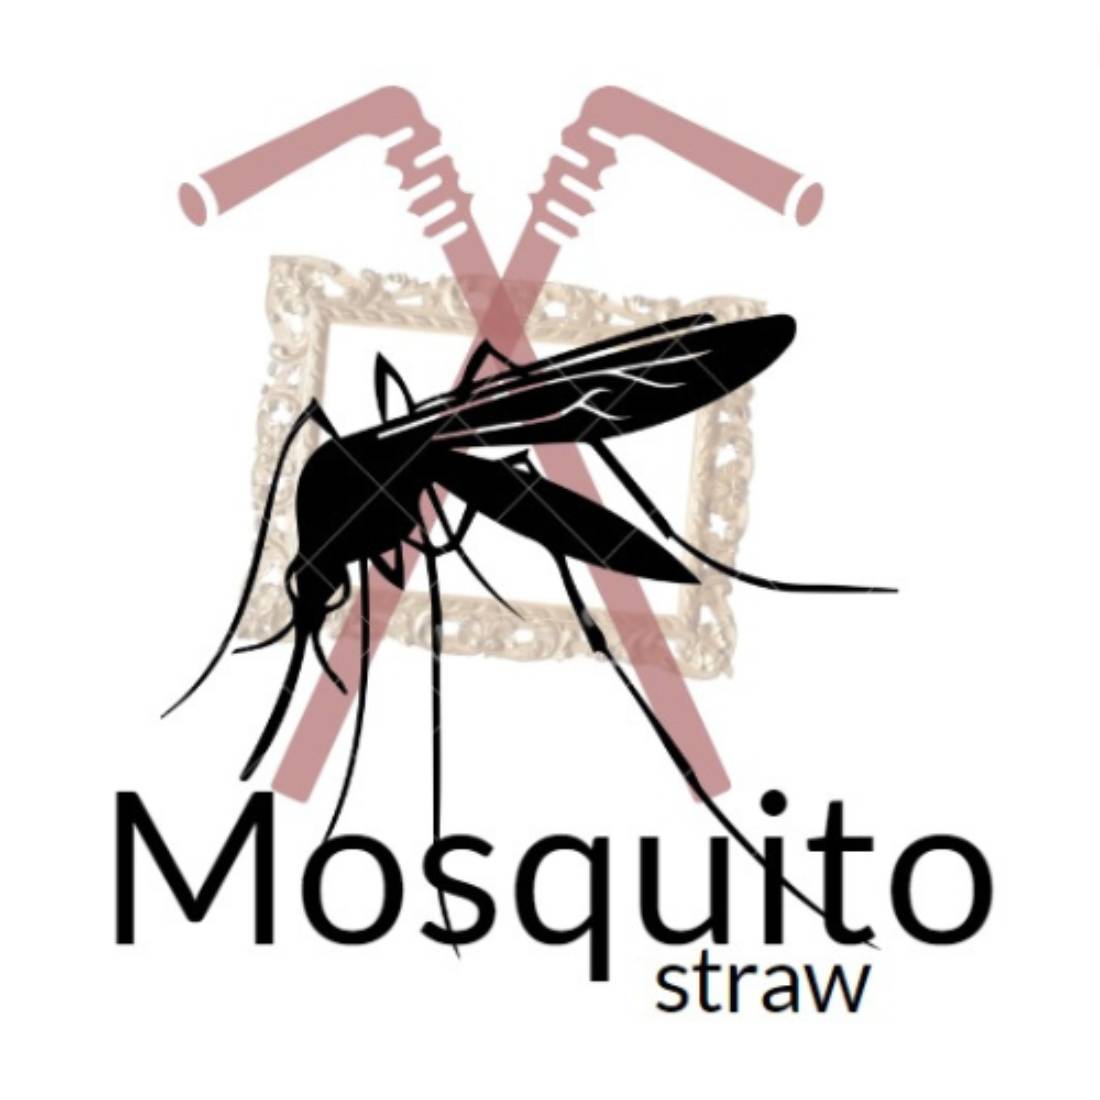 Mosquito Strav Logo Design cover image.